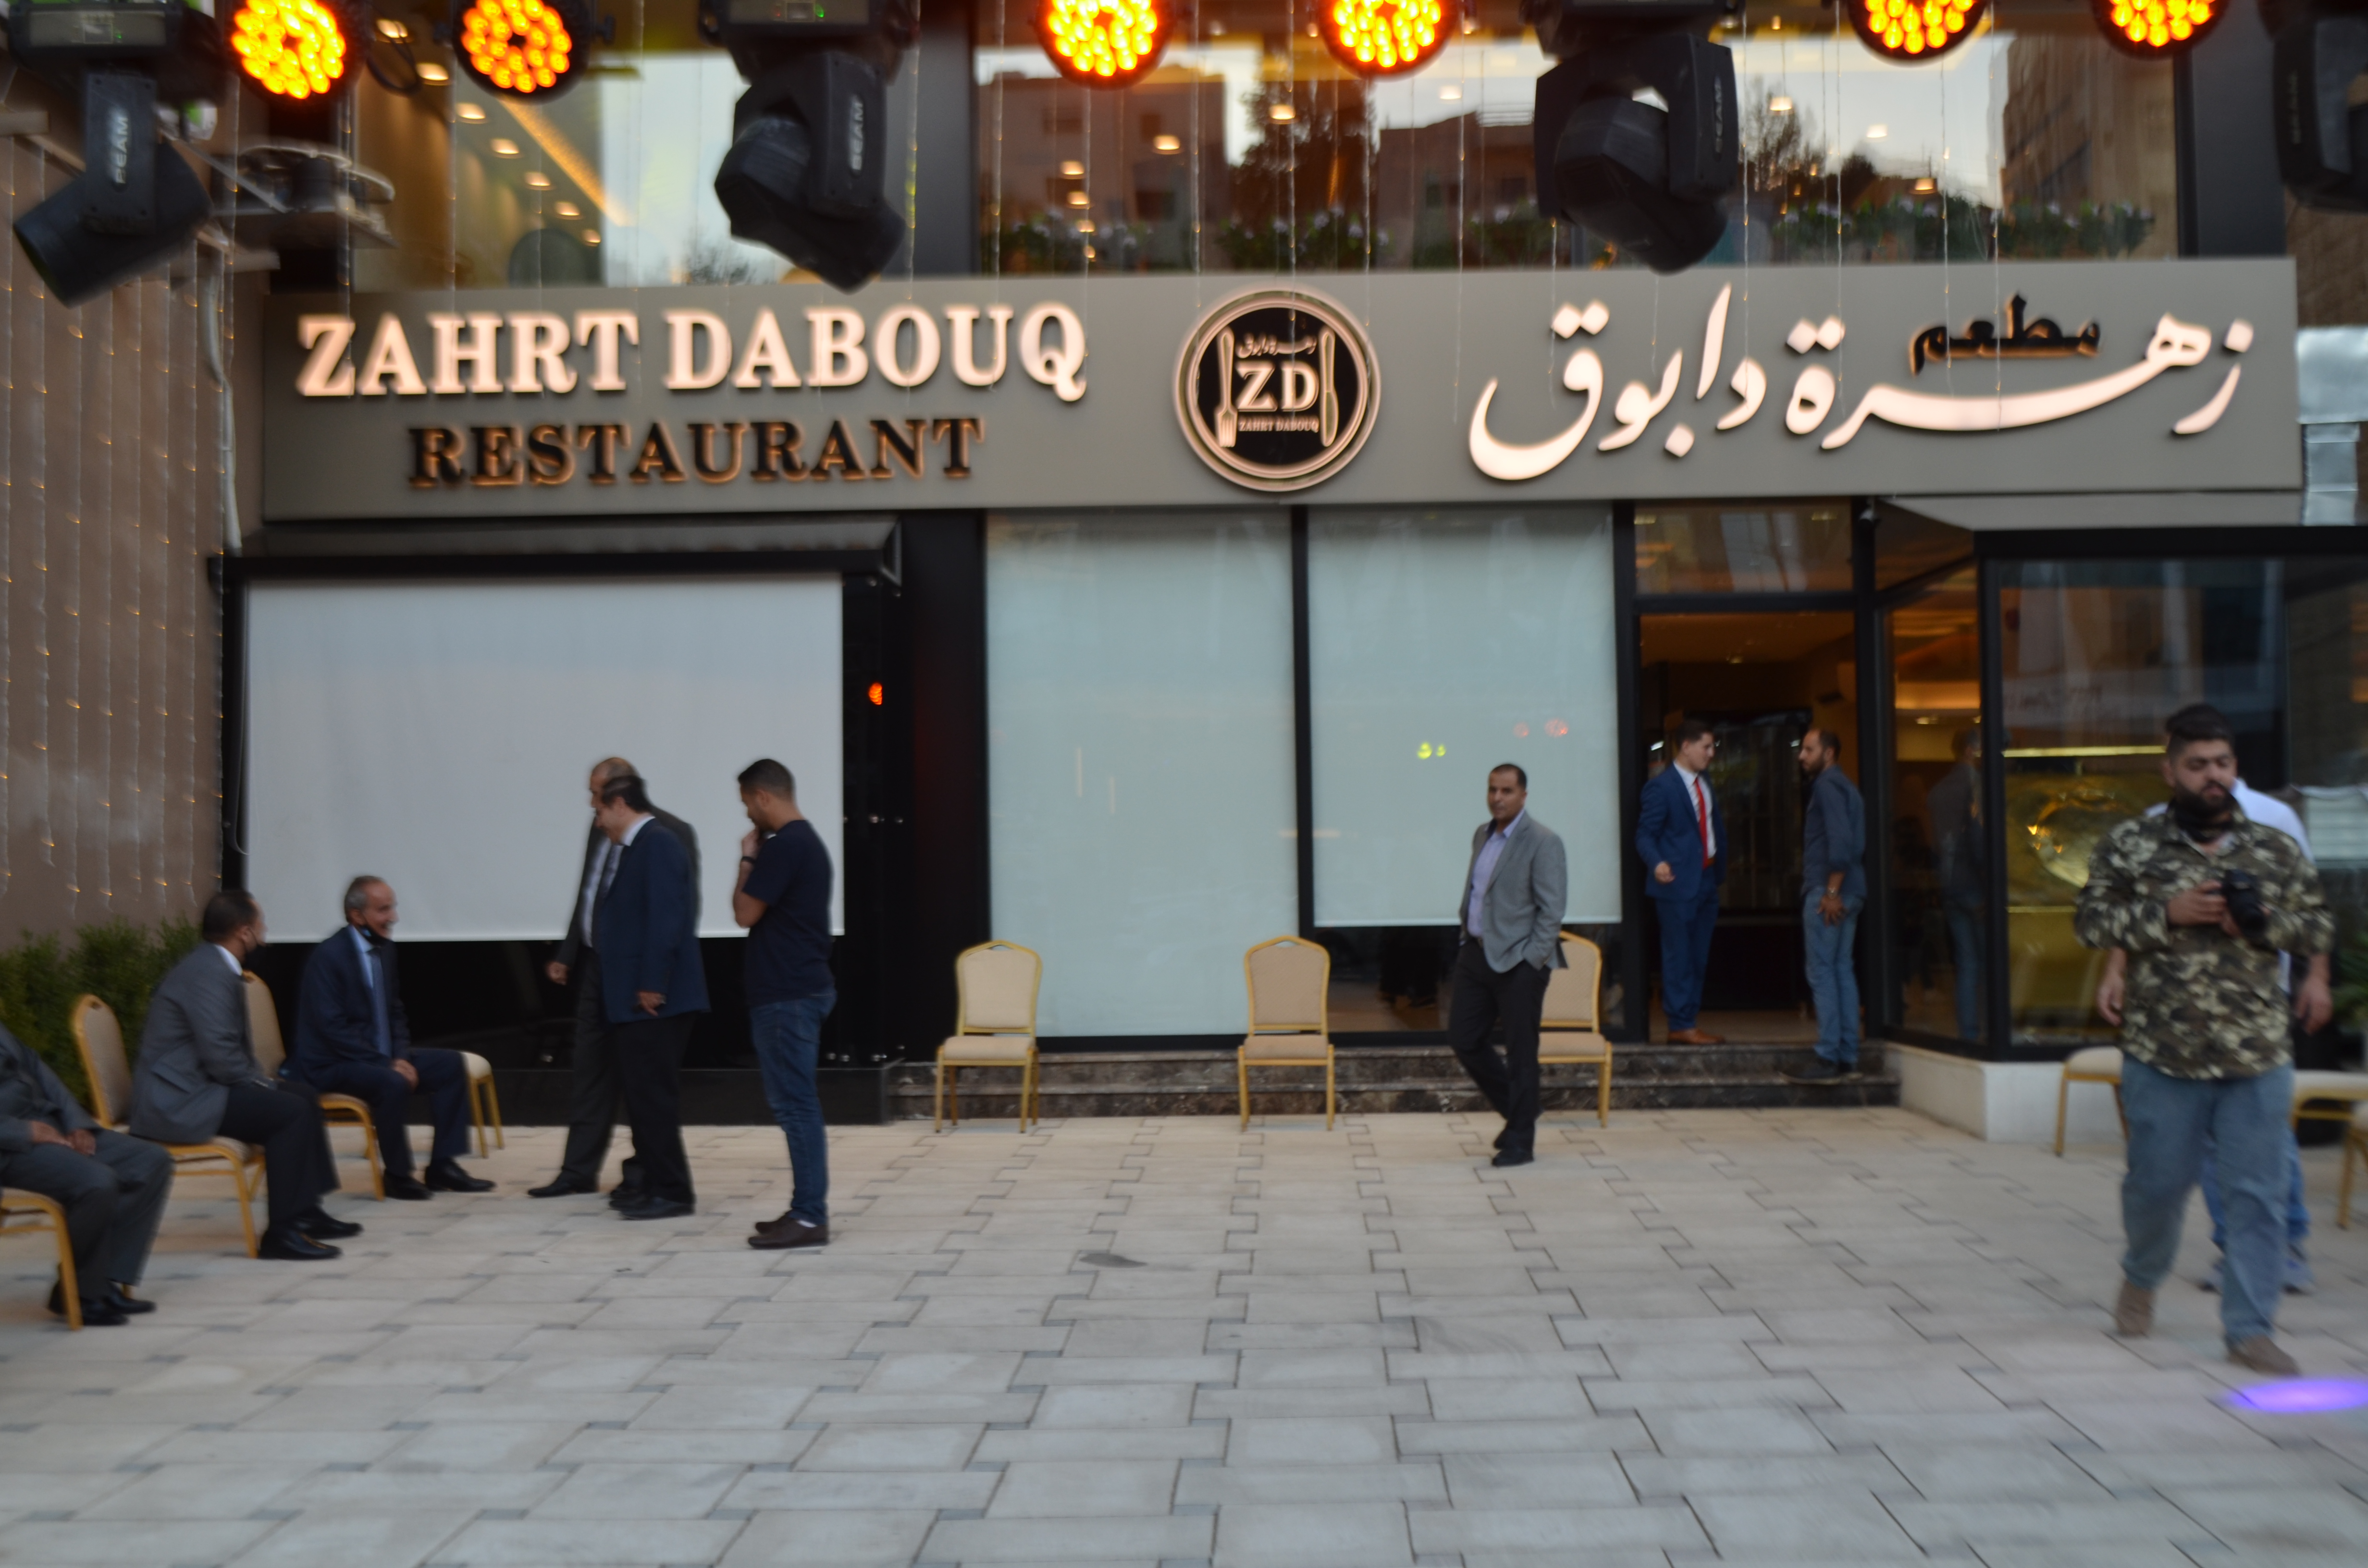 مطعم زهرة دابوق مذاق وجودة عالمية بايدي اردنية